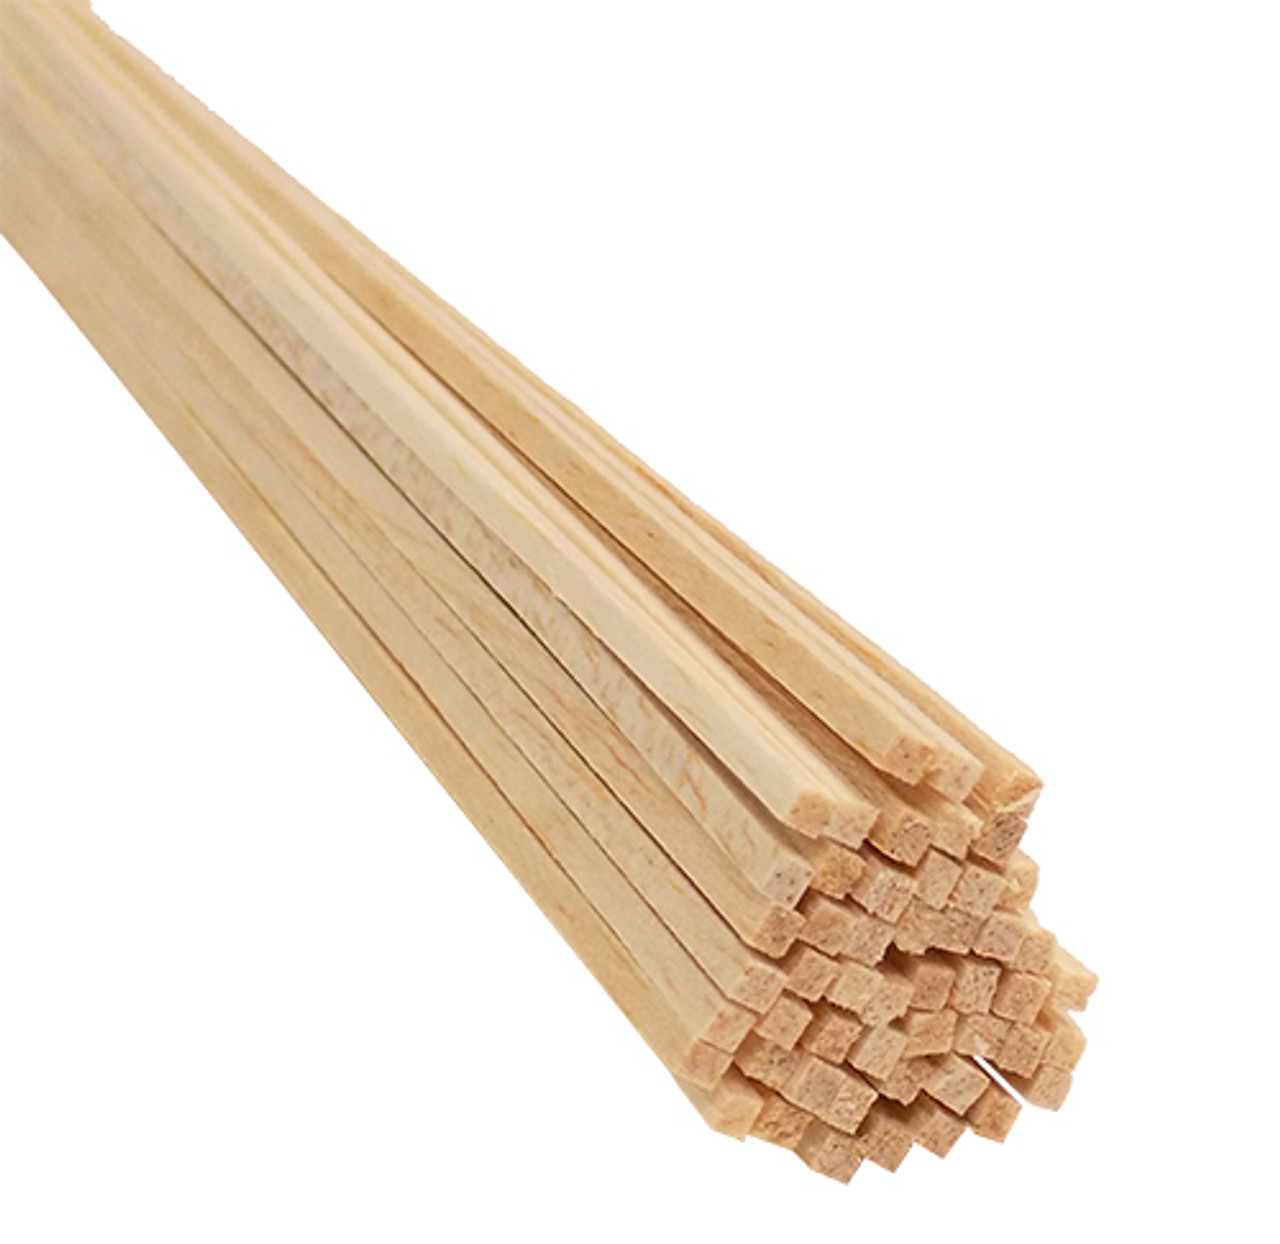 Bud Nosen Balsa Wood Sticks - 1/8 x 1/2 x 36, Pkg of 15